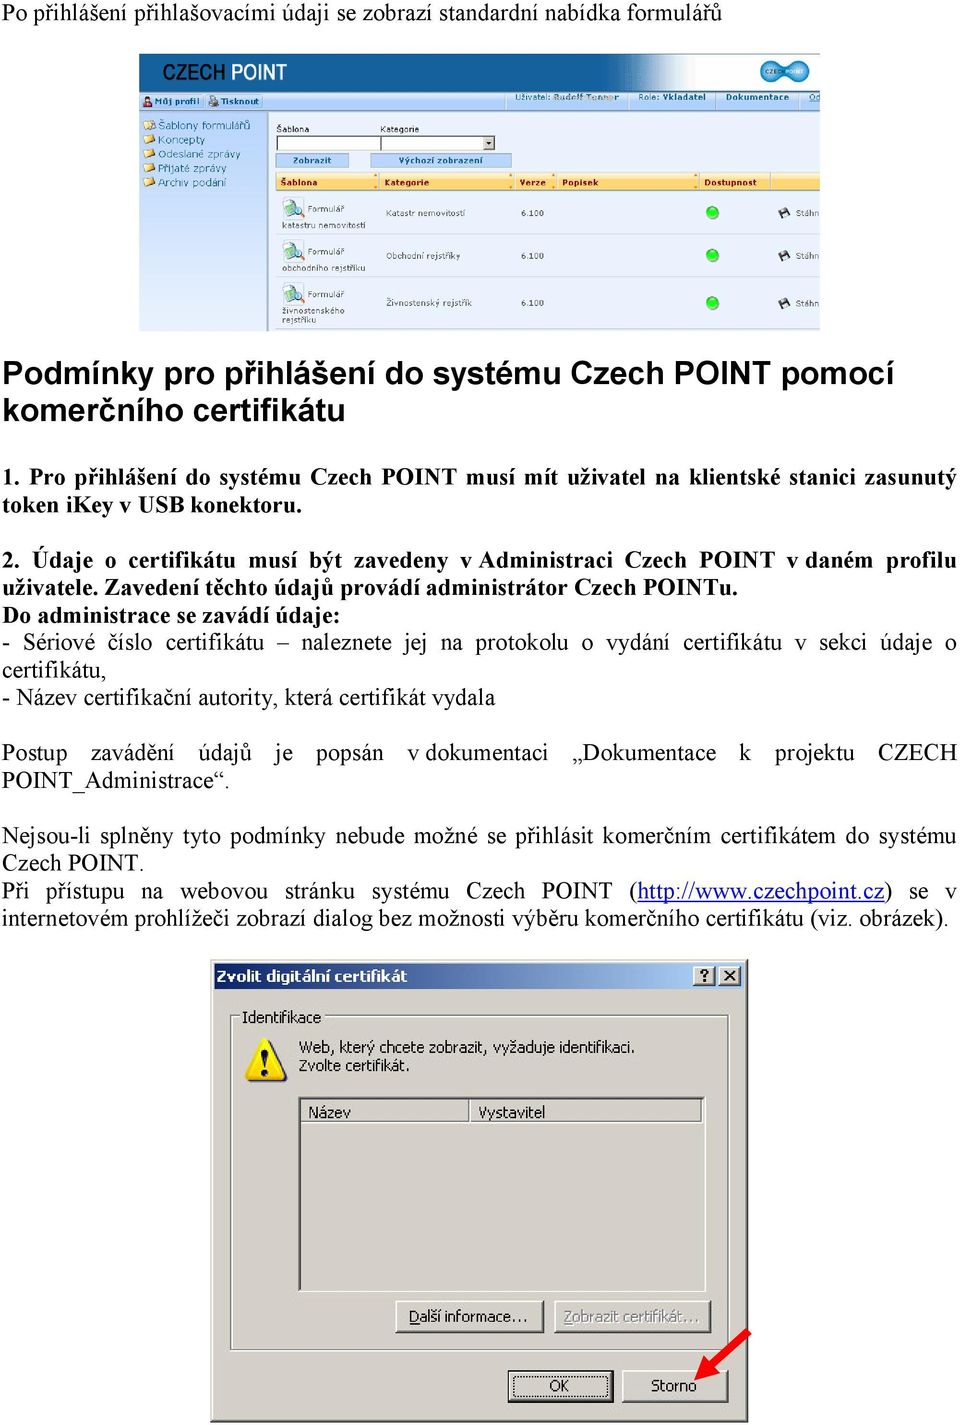 Údaje o certifikátu musí být zavedeny v Administraci Czech POINT v daném profilu uživatele. Zavedení těchto údajů provádí administrátor Czech POINTu.